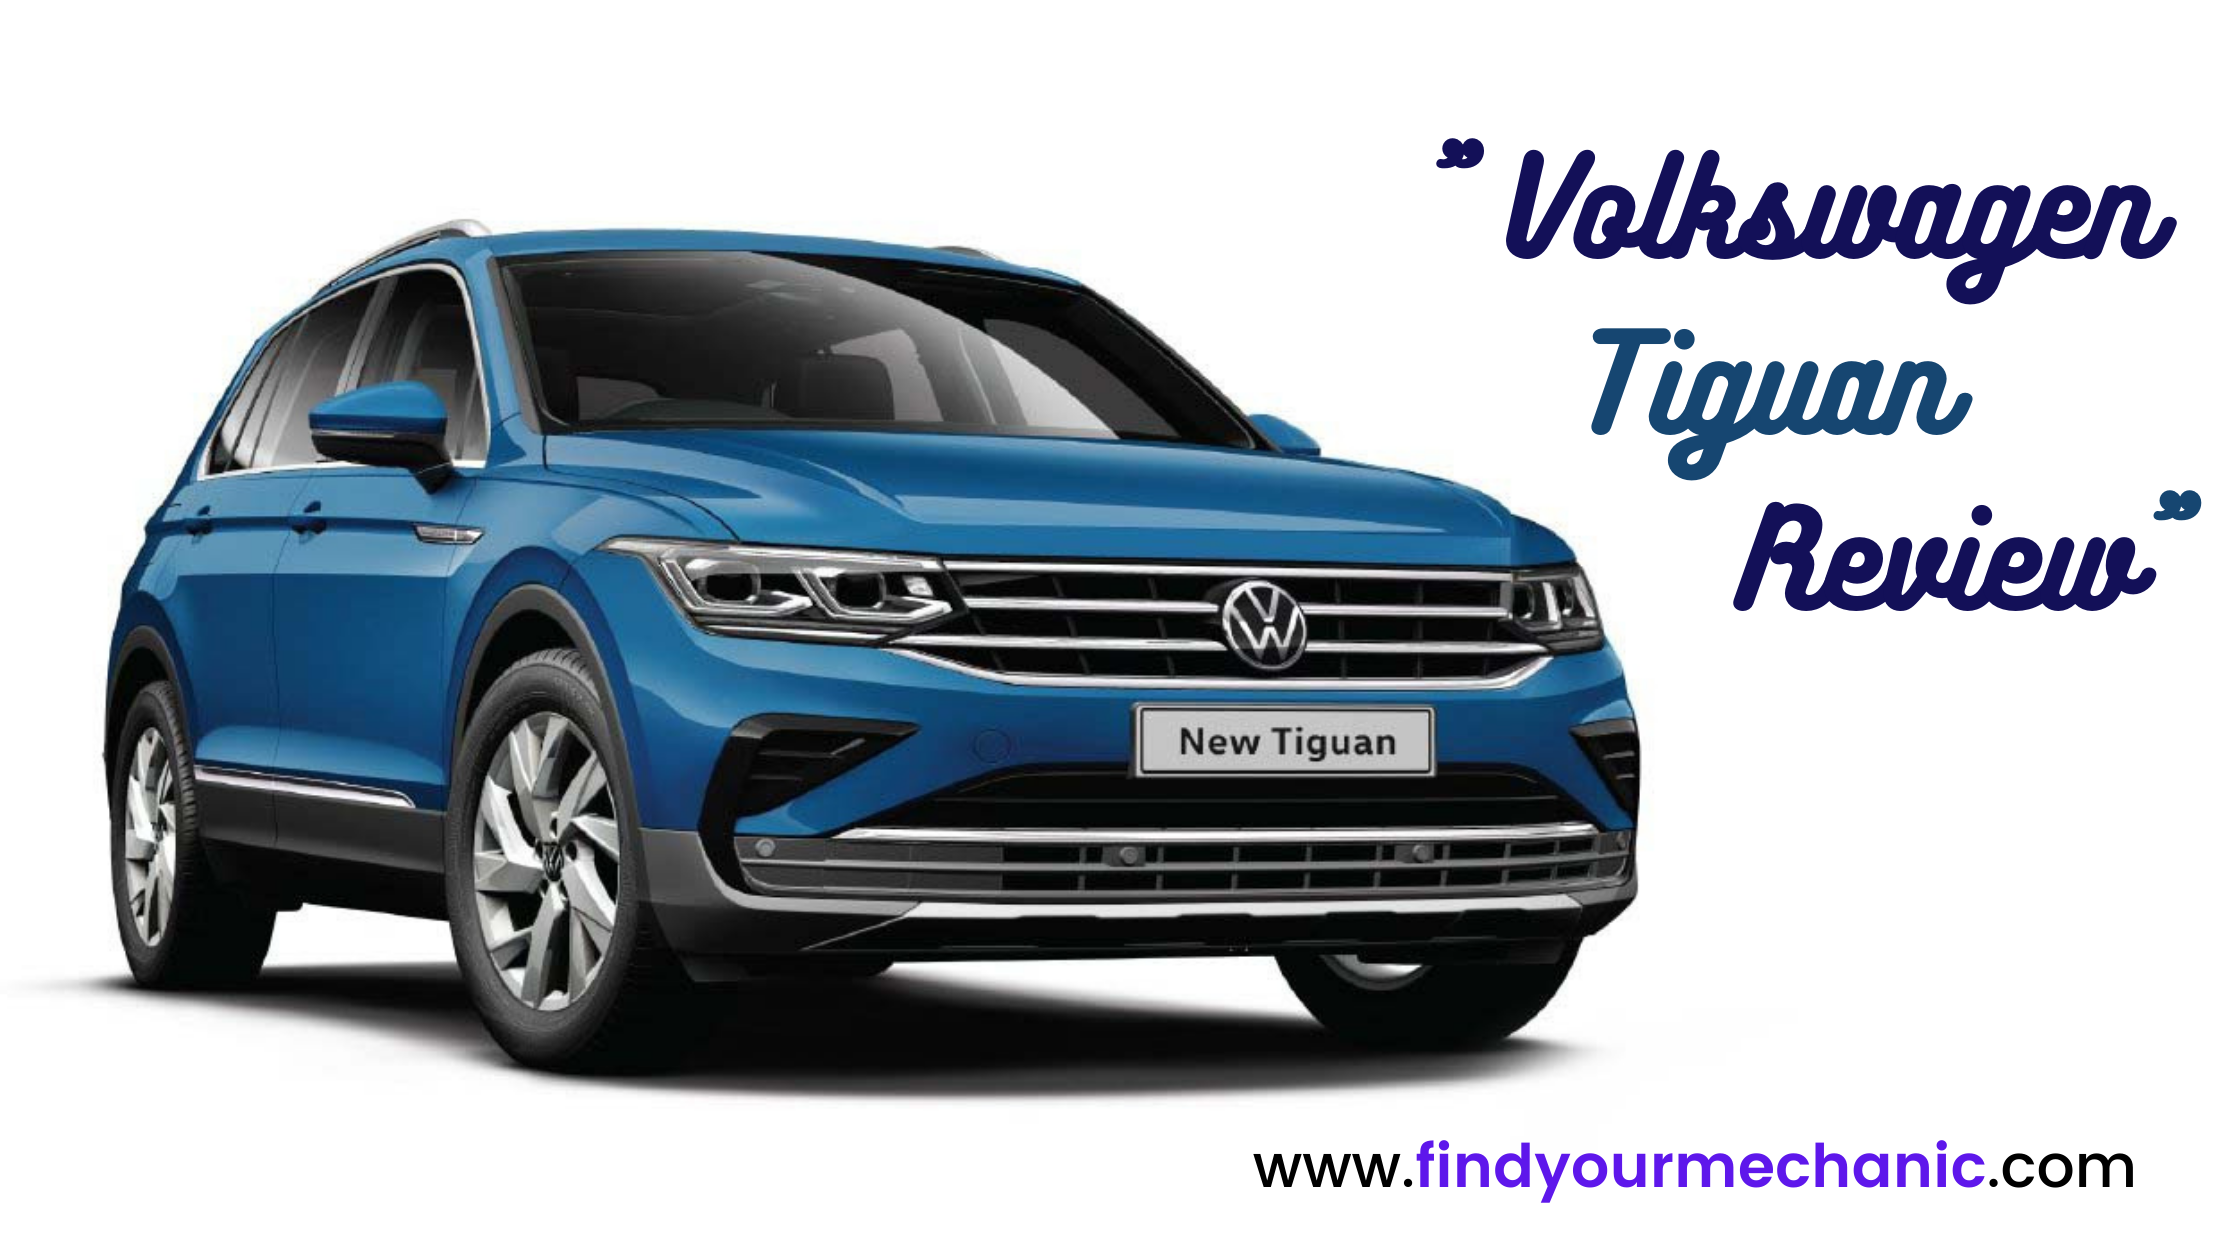 Volkswagen Tiguan Review